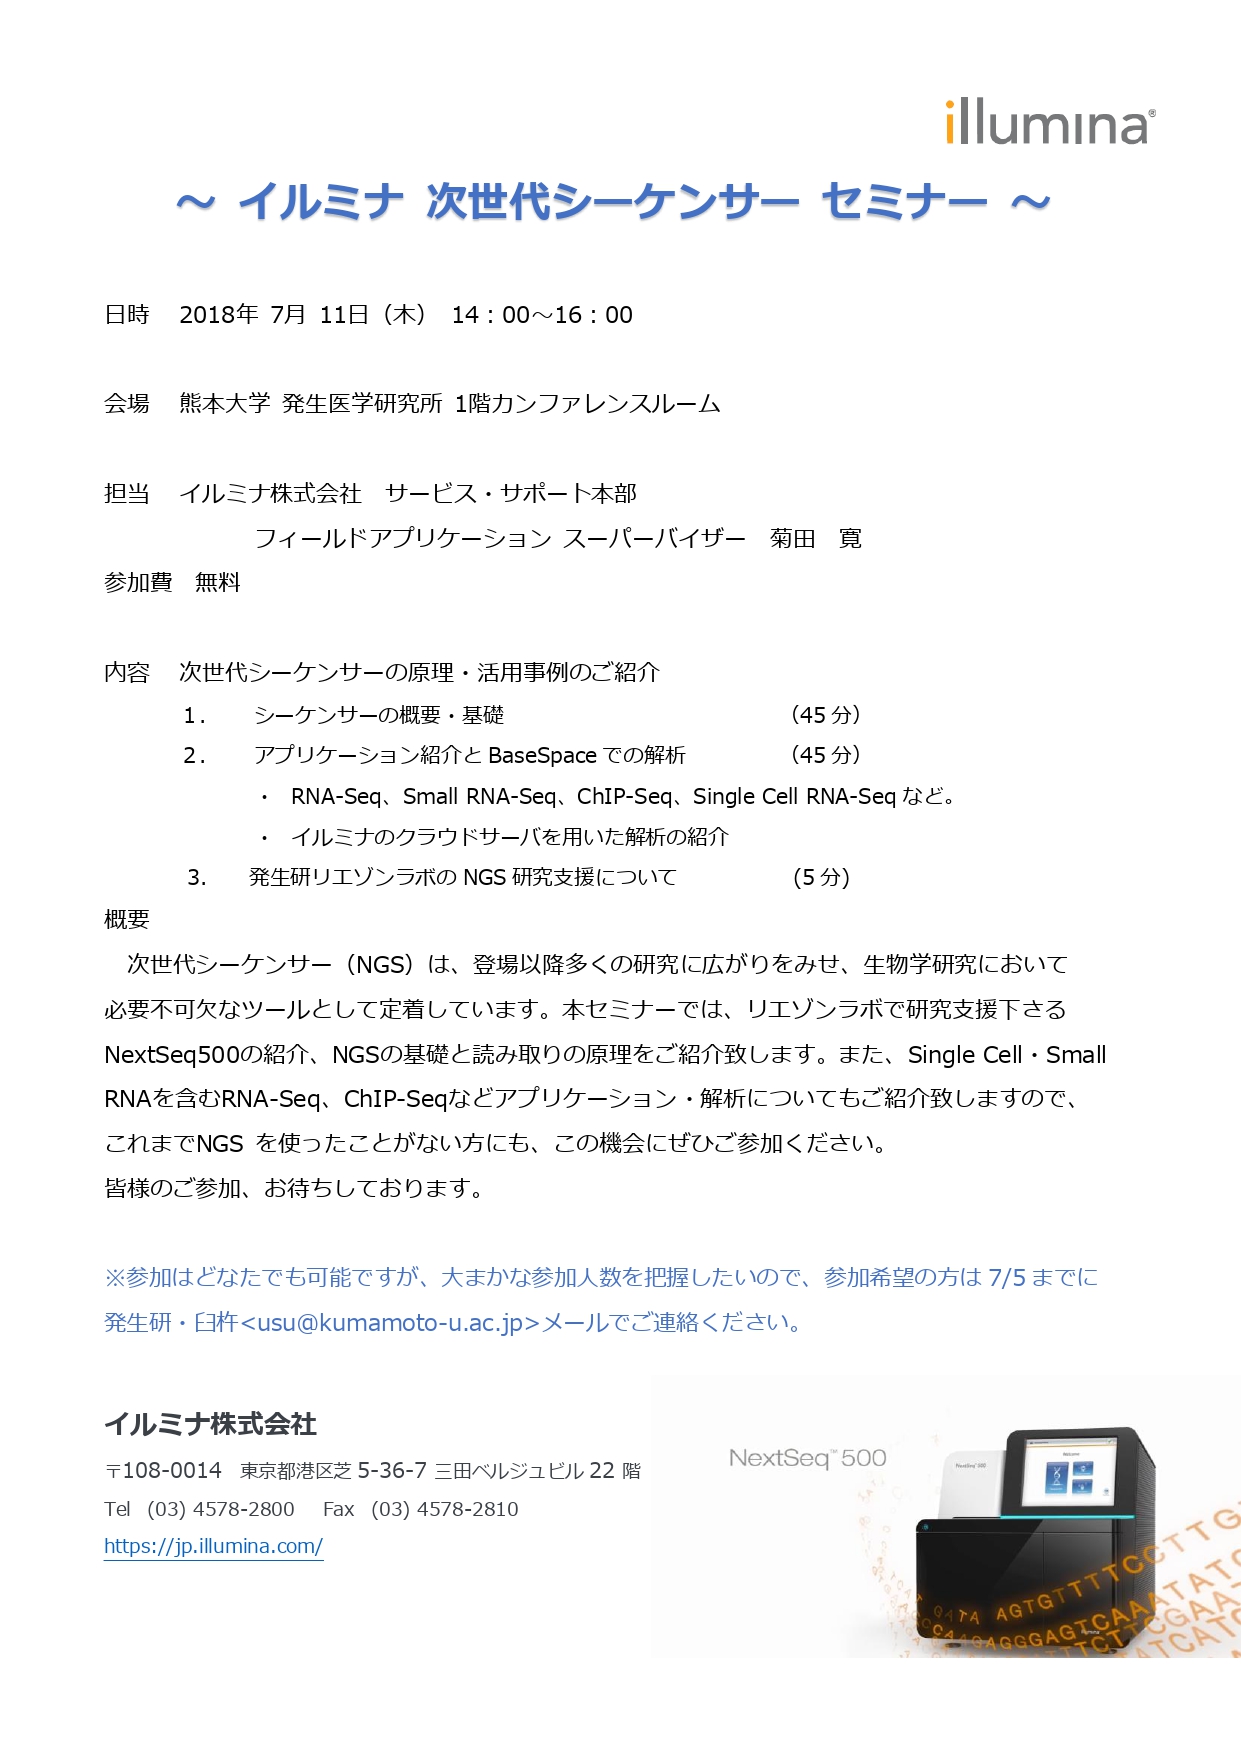 イルミナNGSセミナー_熊本大学発生研_20190711_Final_page-0001.jpg